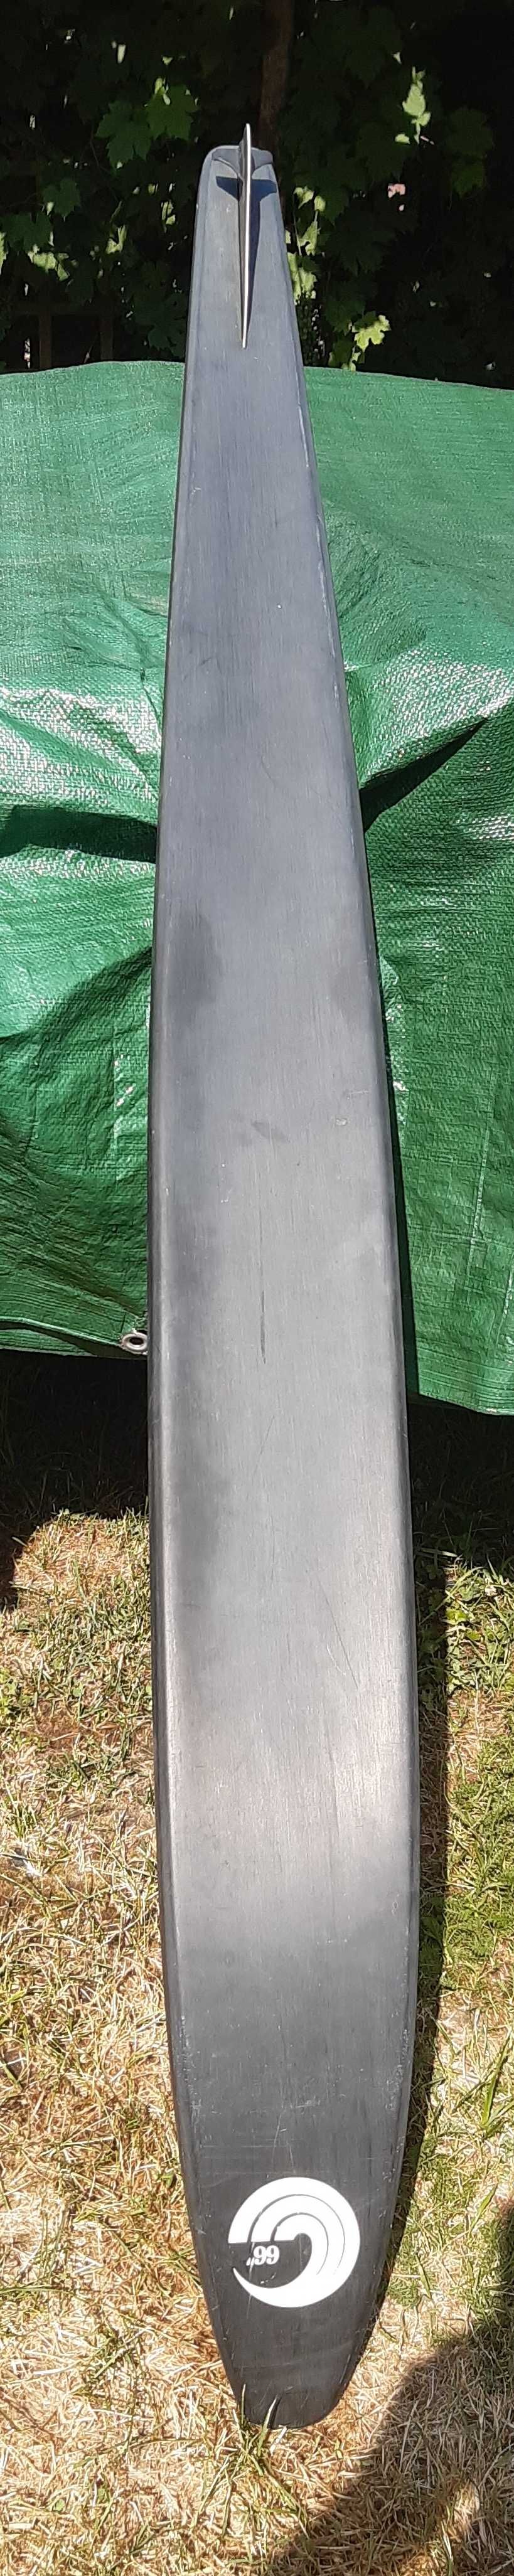 Narta wodna 168 cm (66`) Connelly -zawodnicza (kevlar, grafit)